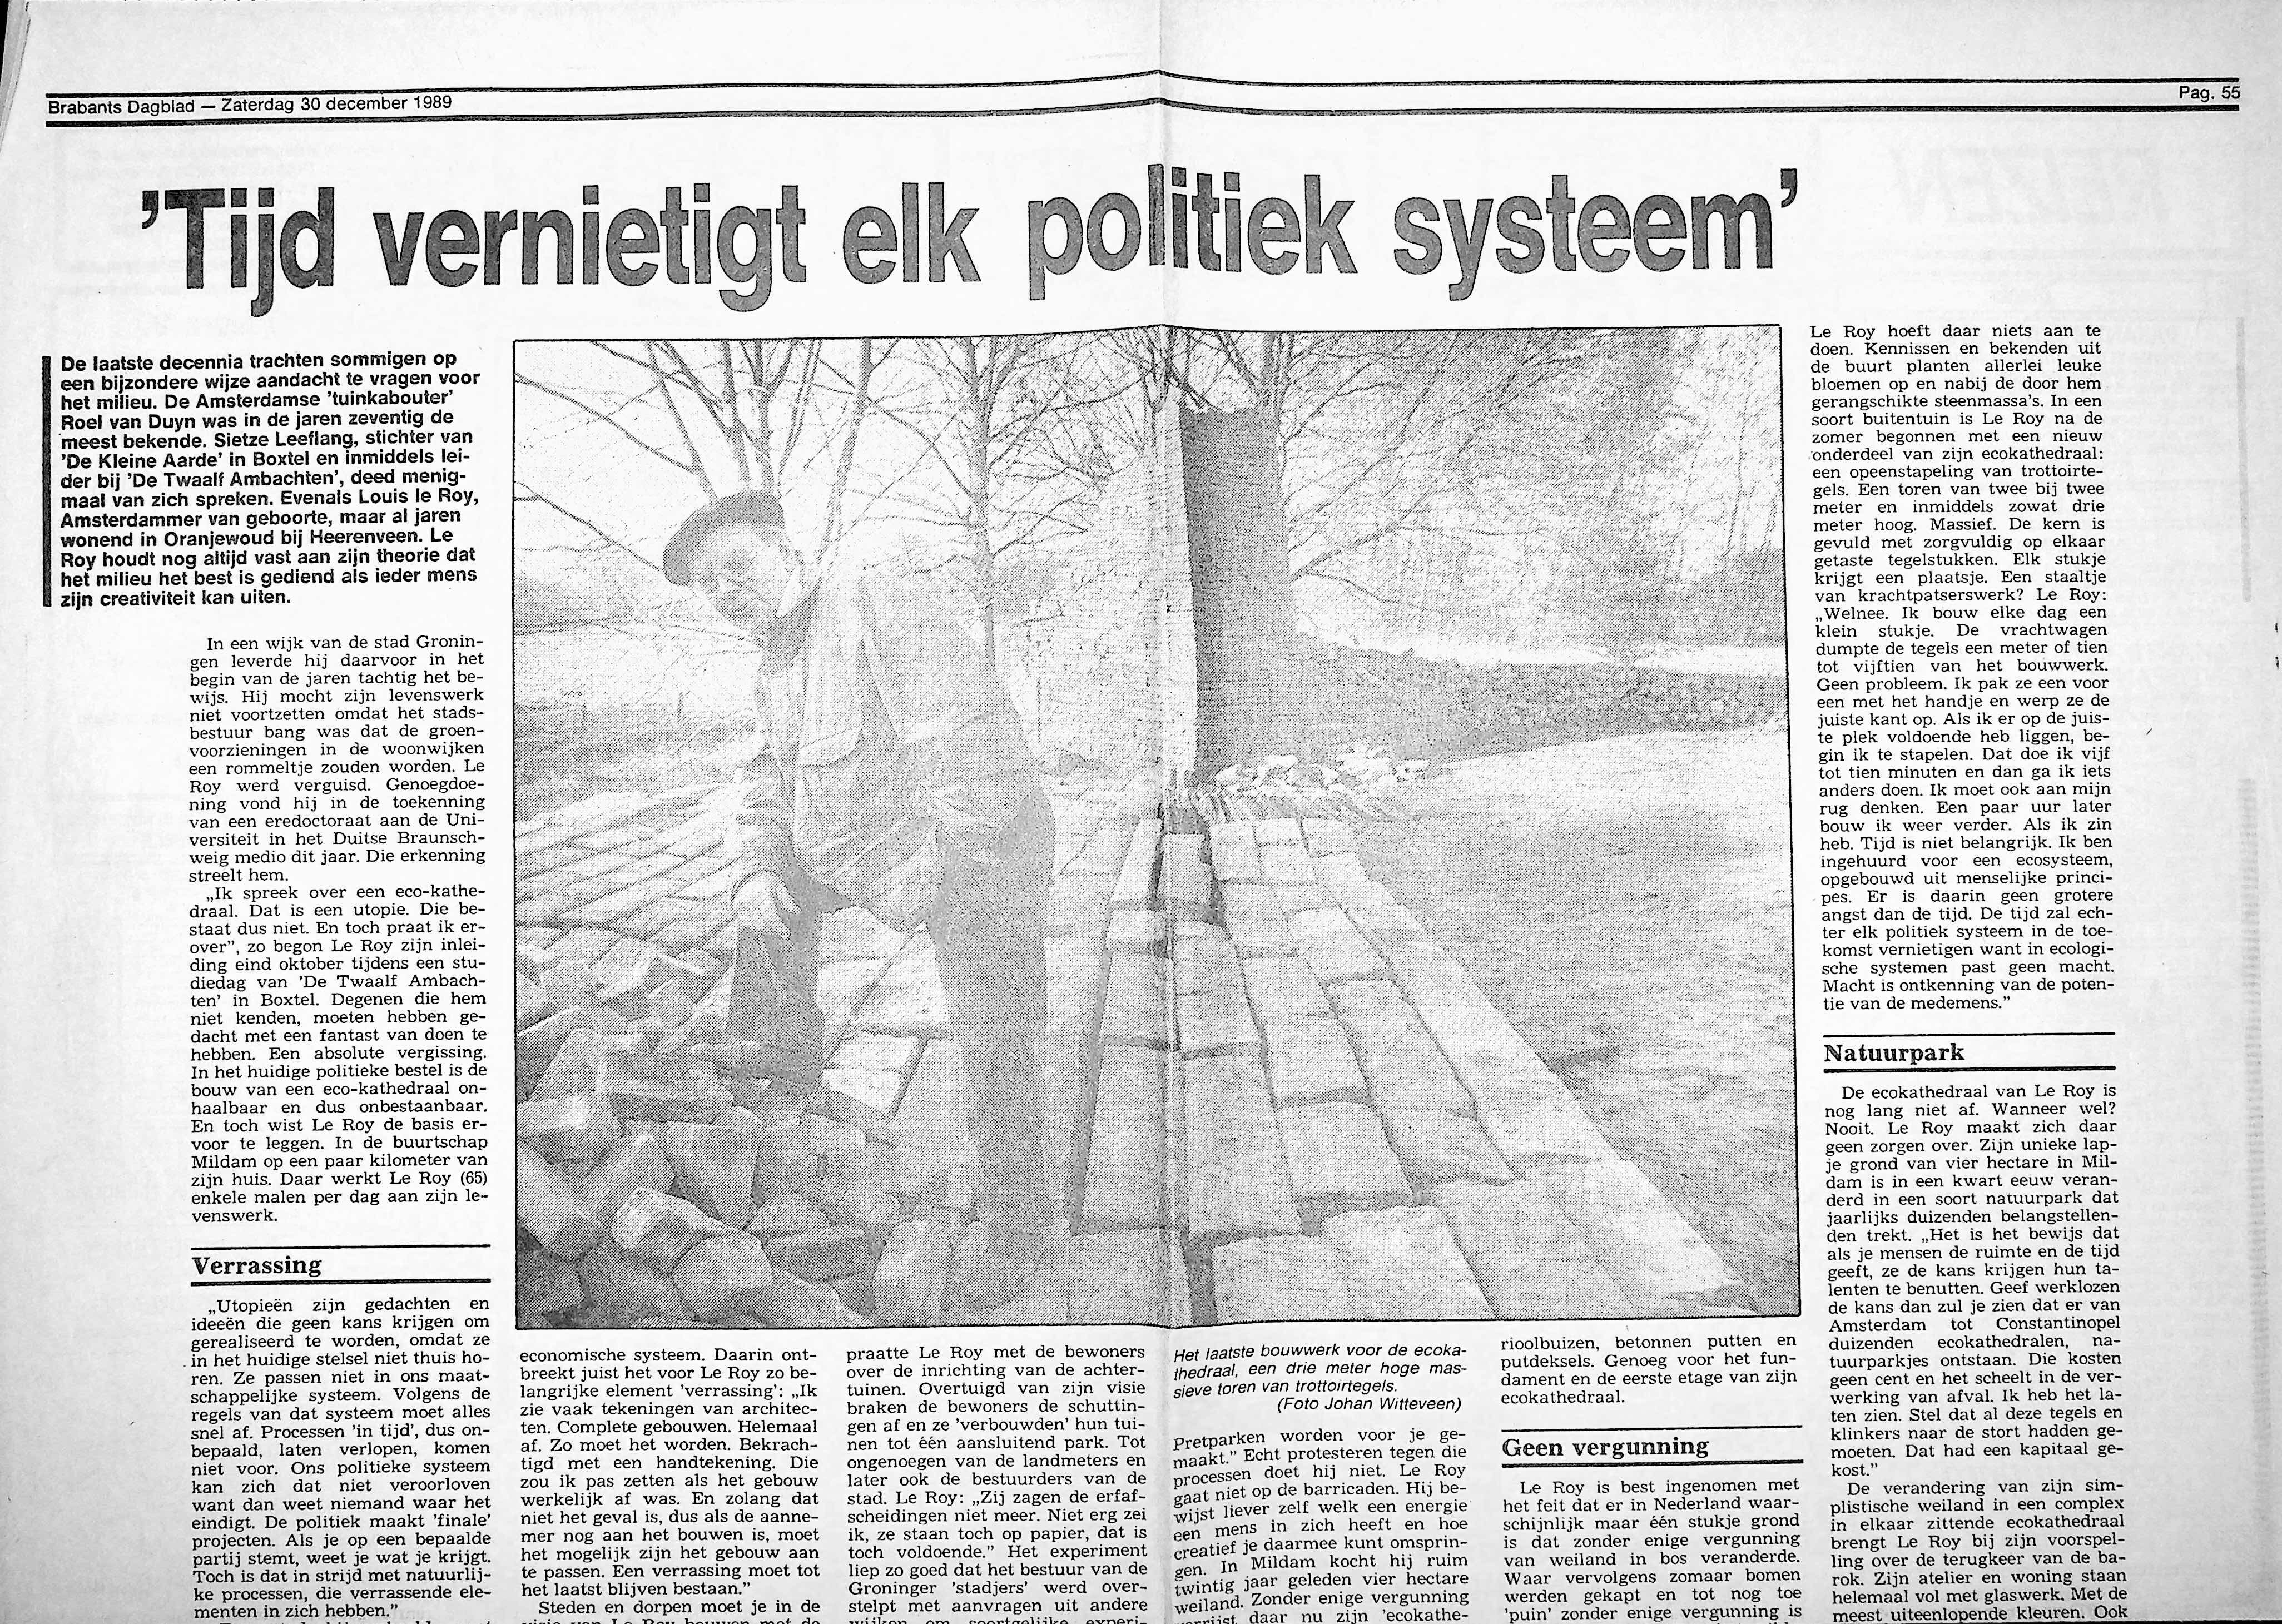 19891230_Tijd_vernietigt_elk_politiek_systeem_BD_001.jpg